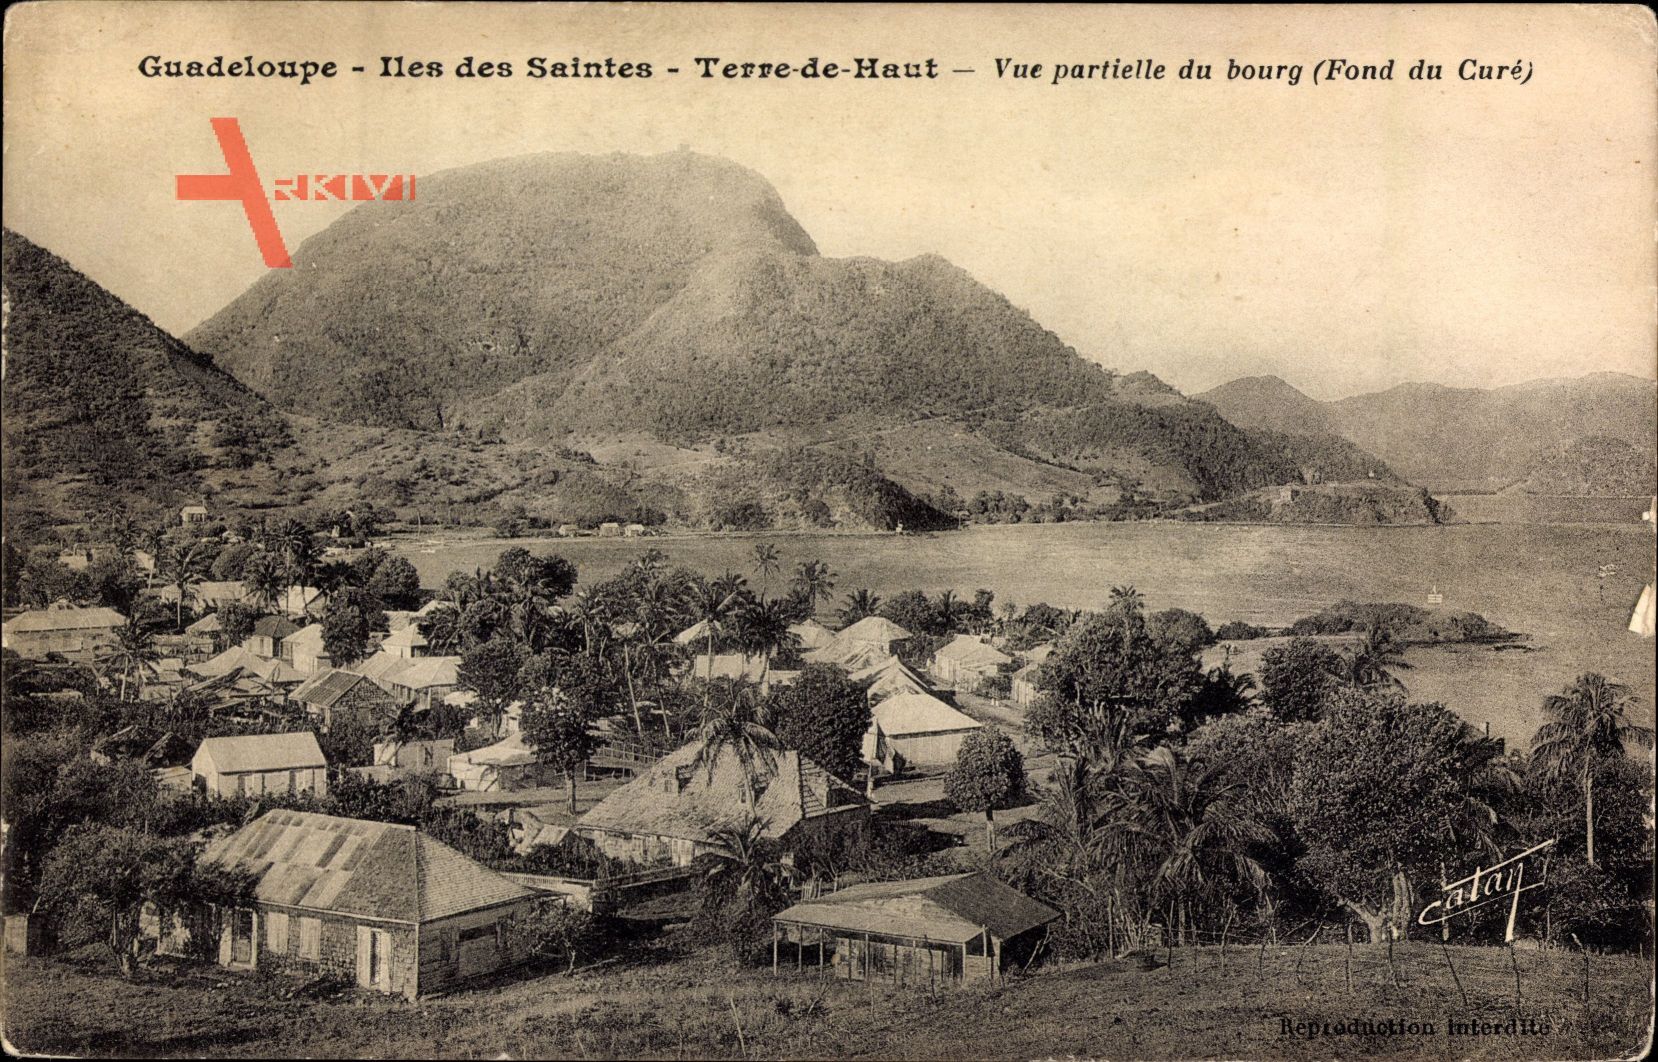 Guadeloupe, Iles des Saintes, Terre de Haut, Vue partielle du bourg